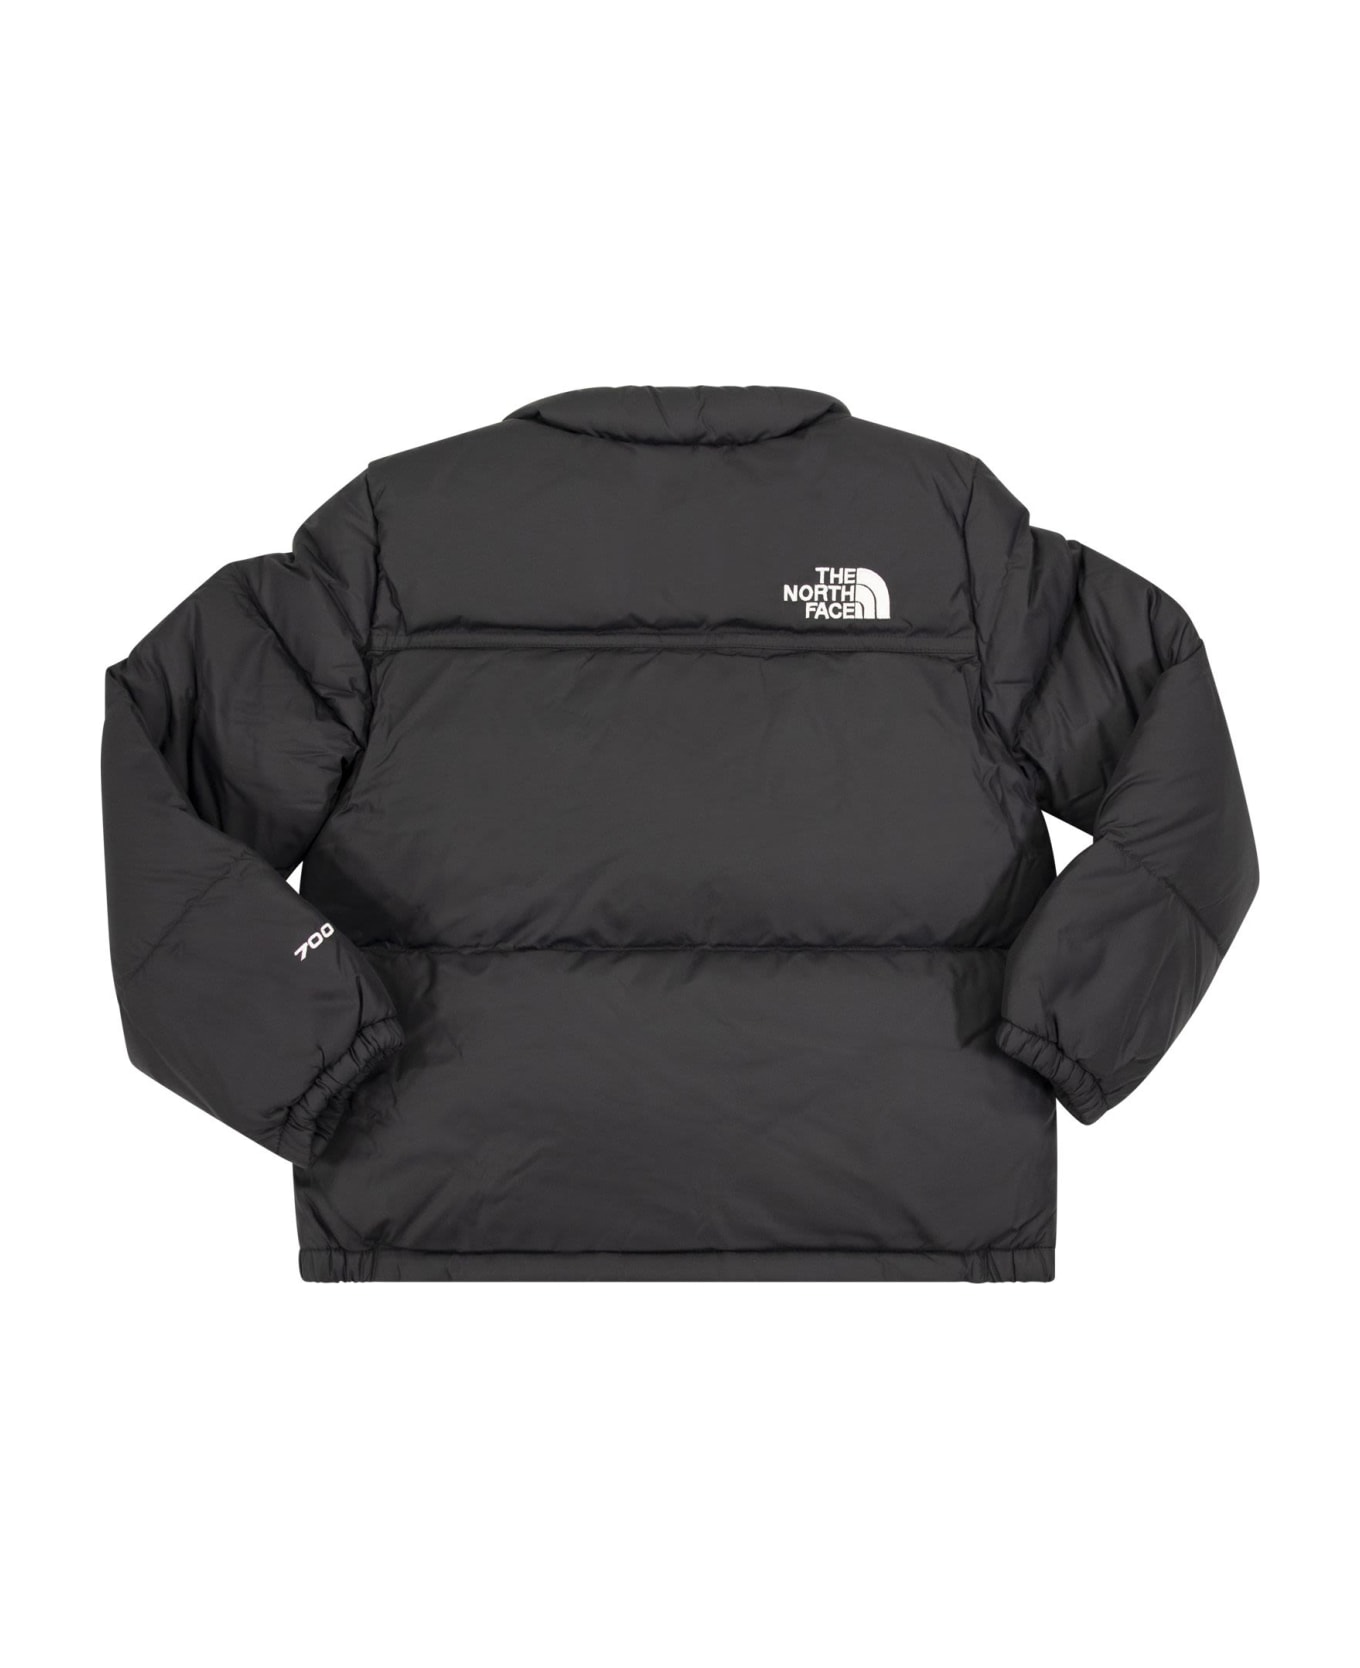 The North Face Nuptse 1996 Retro Jacket - Black